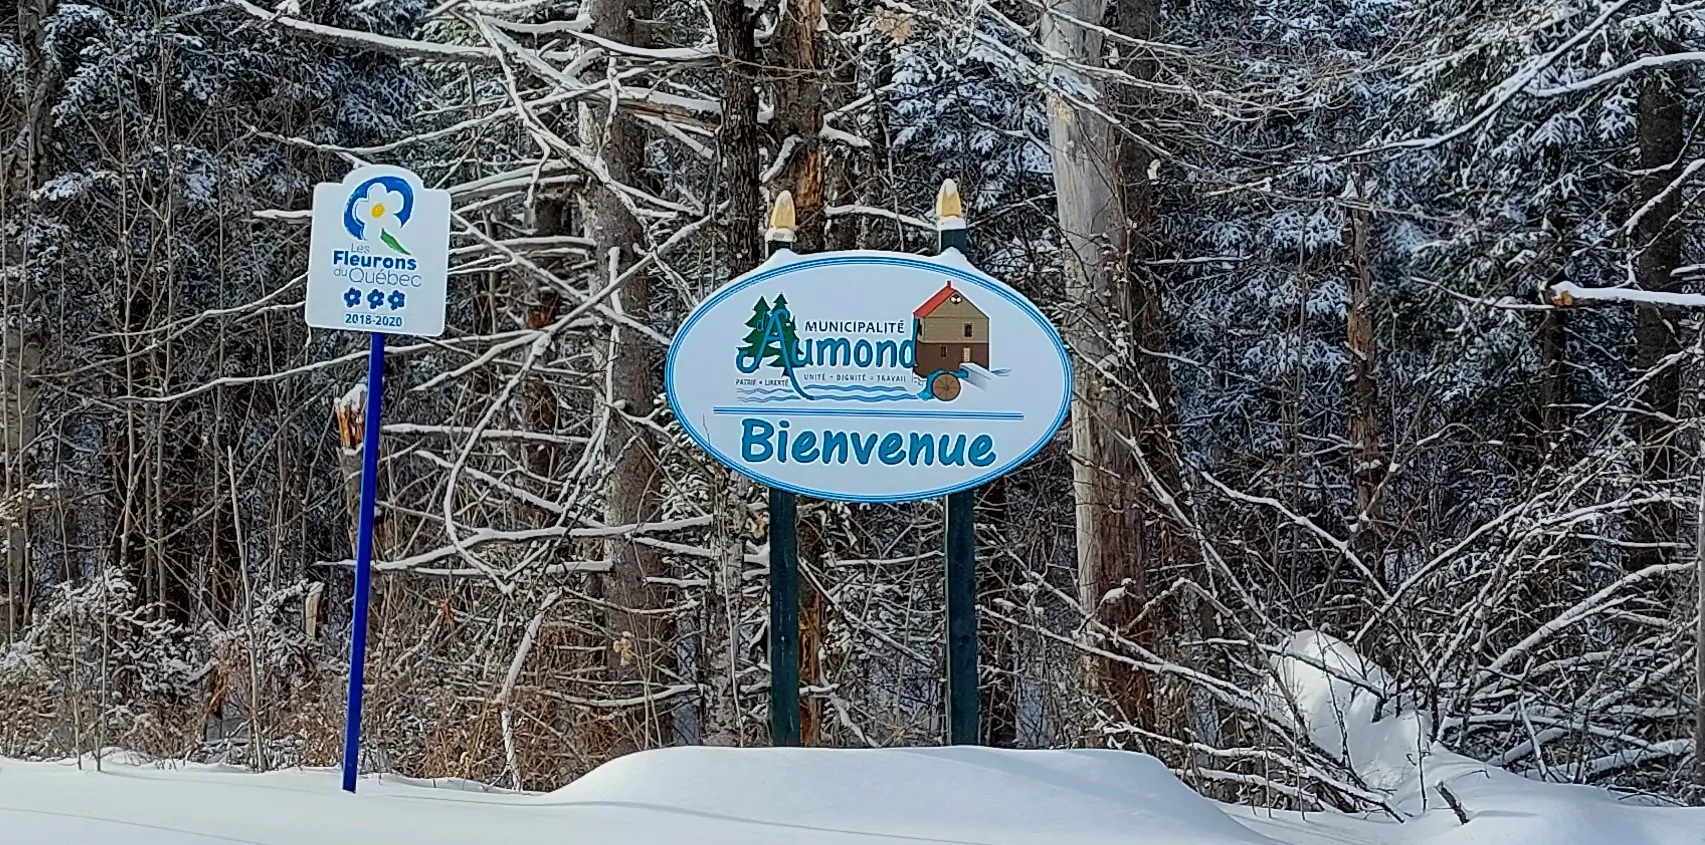 Aumond_bienvenue_hiver